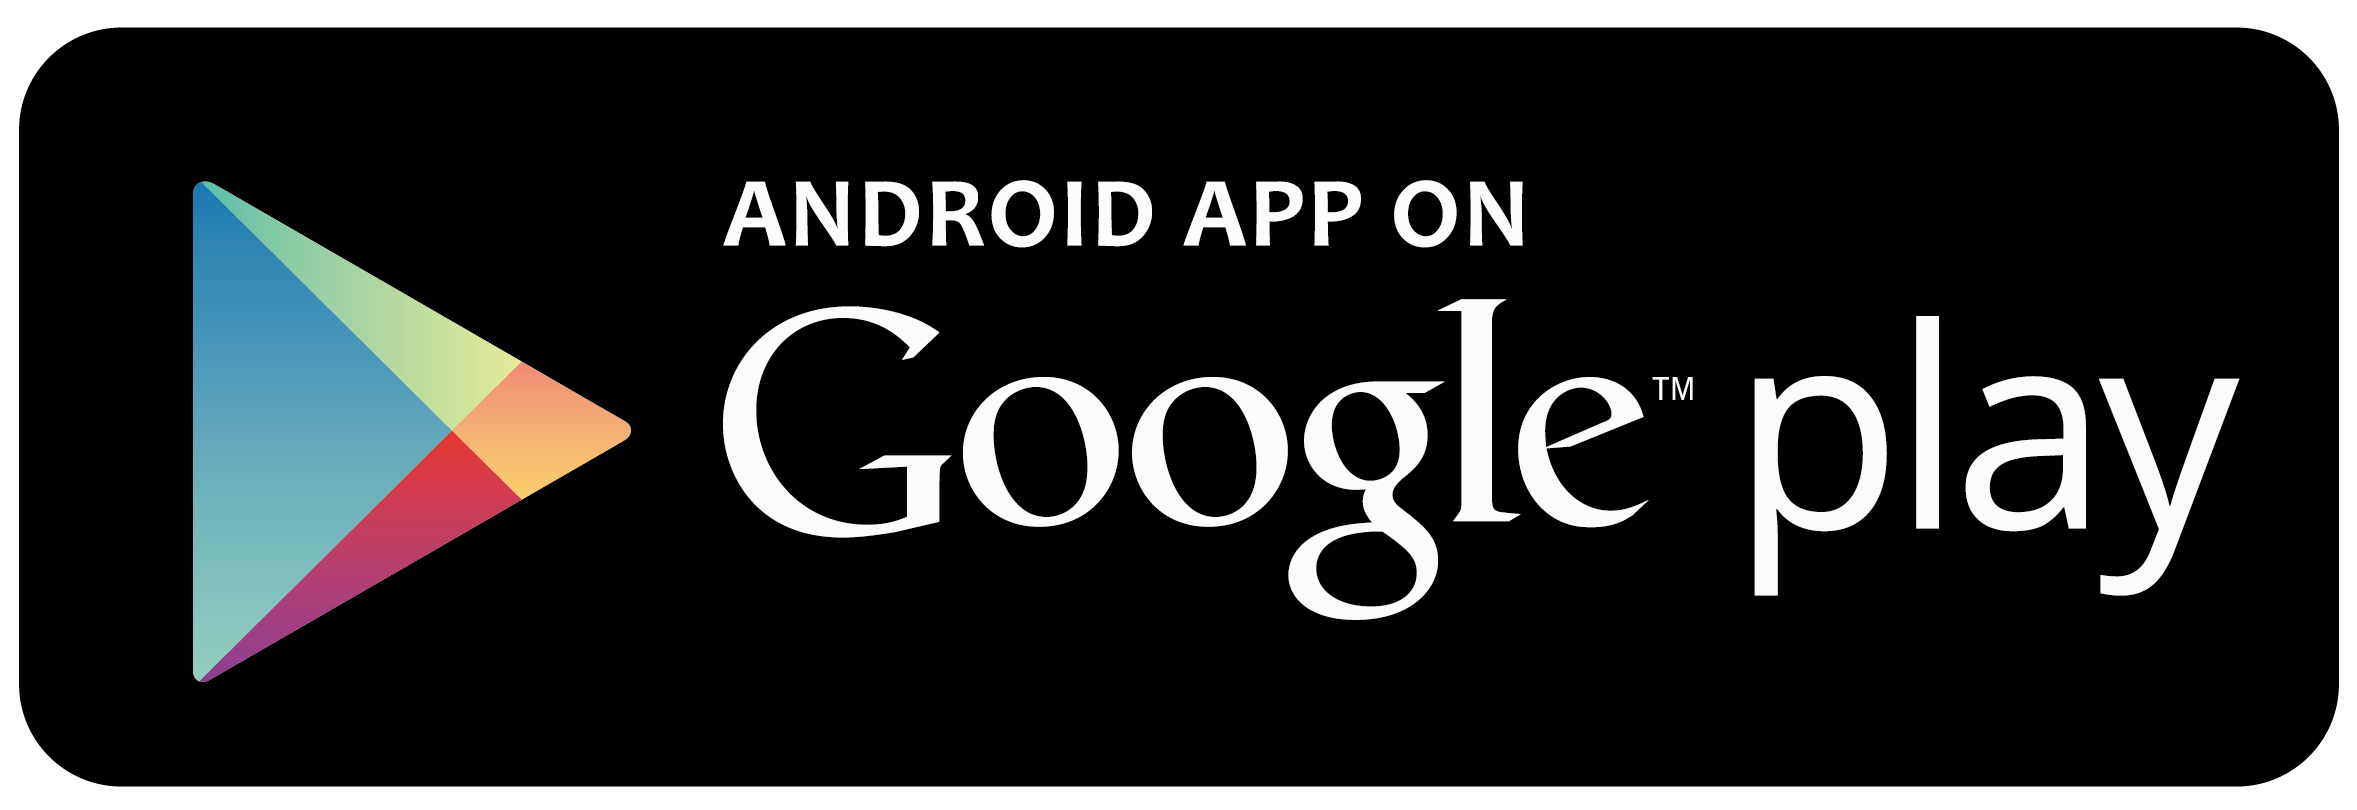 Google Play LiveHealth mobile app